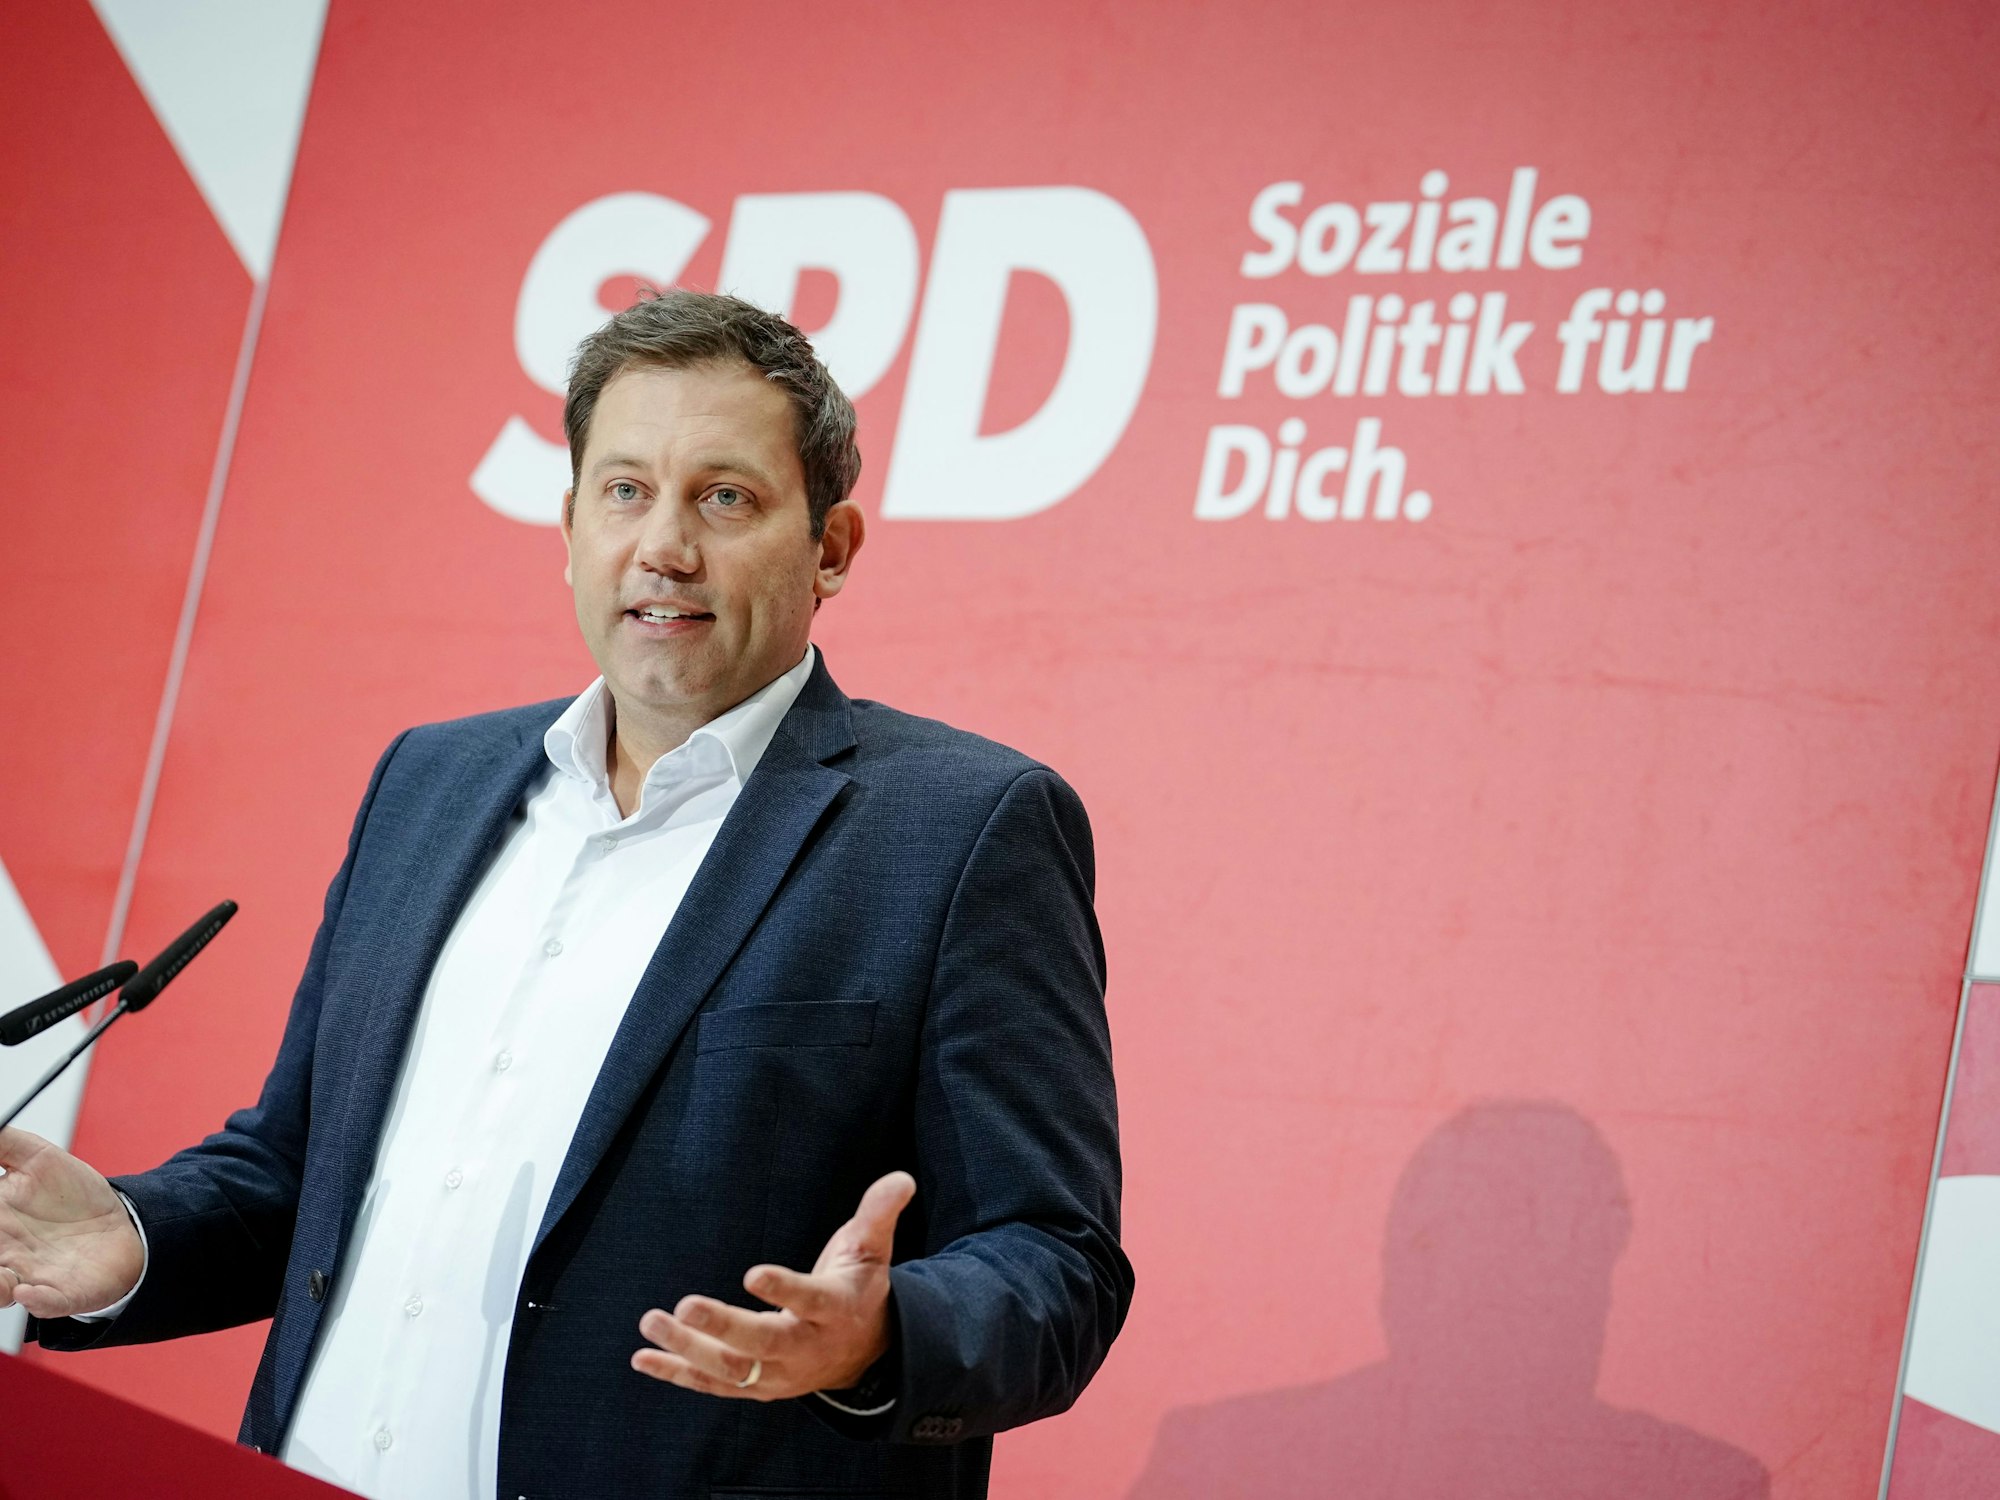 Lars Klingbeil, Bundesvorsitzender der SPD, gibt zum Abschluss der Jahresauftaktklausur des SPD-Präsidiums und Parteivorstands eine Pressekonferenz. Die SPD-Spitze bereitet sich auf das politische Jahr 2023 vor, in dem unter anderem fünf Landtagswahlen anstehen. +++ dpa-Bildfunk +++